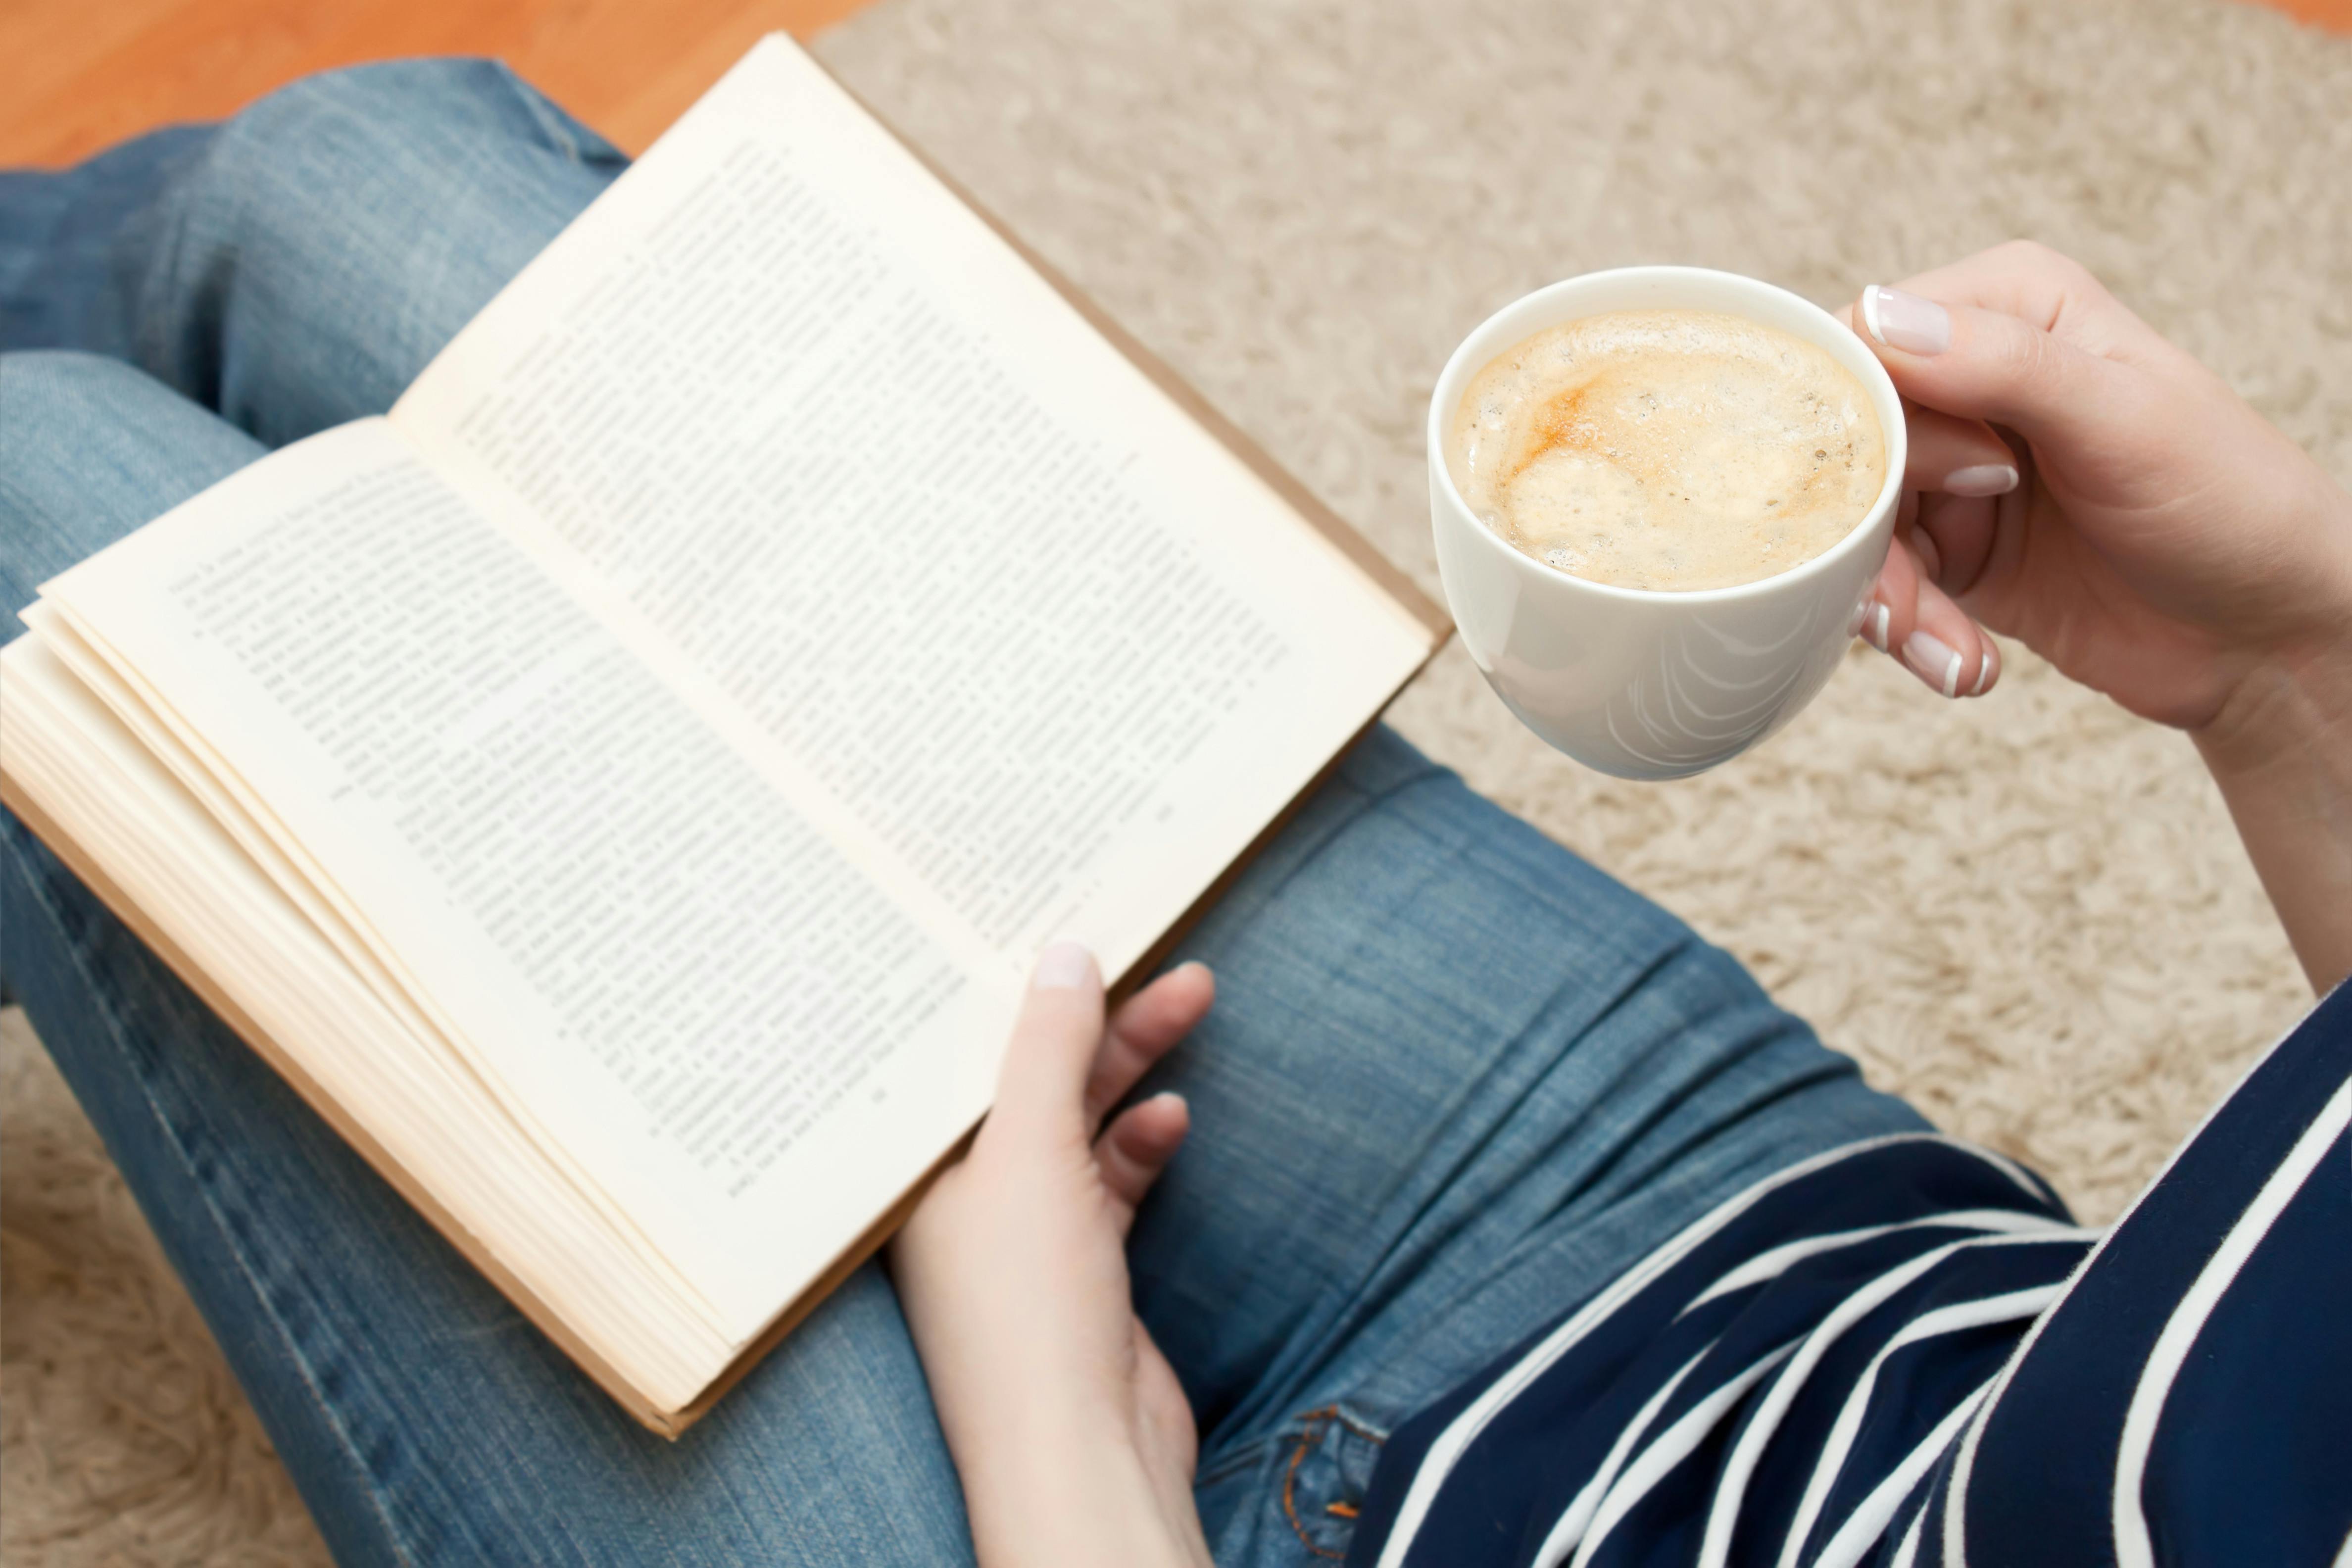 Kvinden læser en bog, mens hun sidder på gulvet og holder en kop kaffe